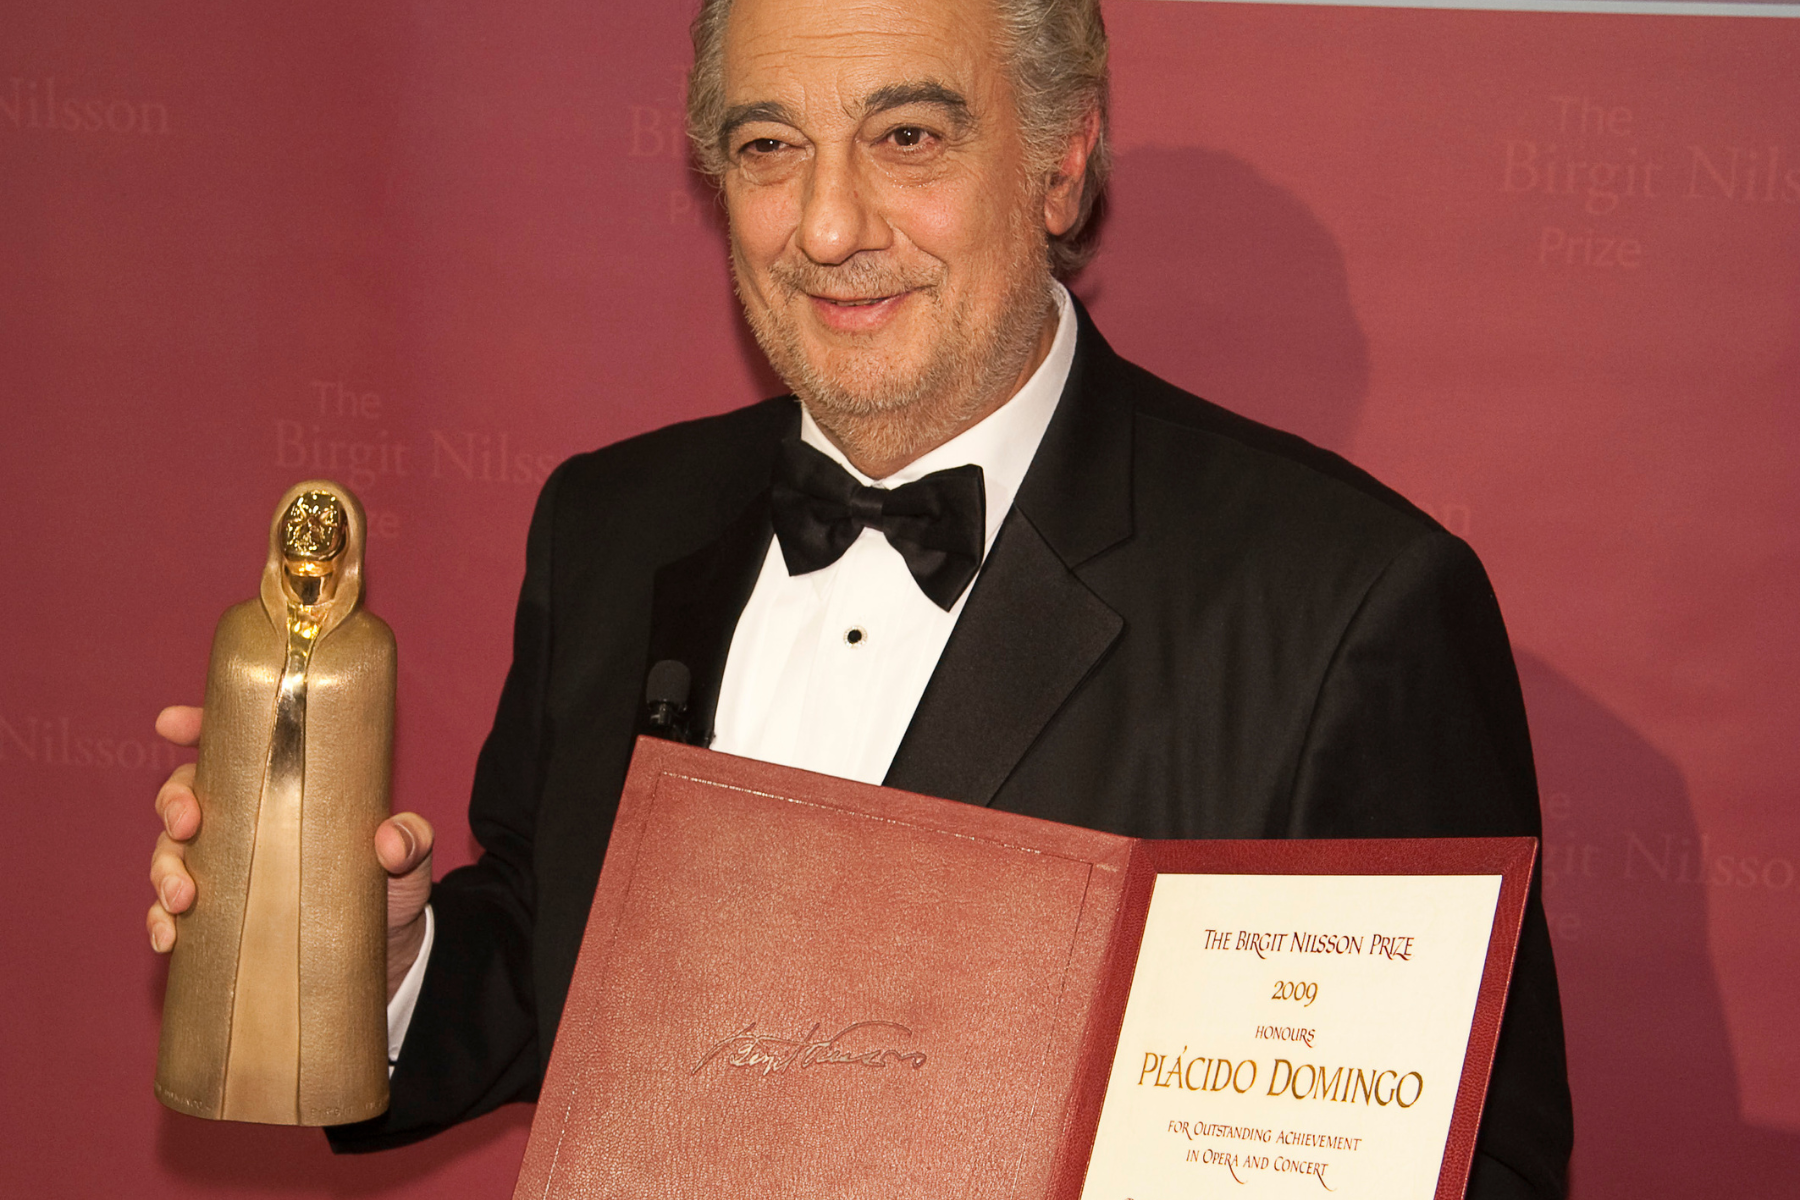 Du visar för närvarande Plácido Domingo – Birgit Nilsson Prize prisceremoni 2009